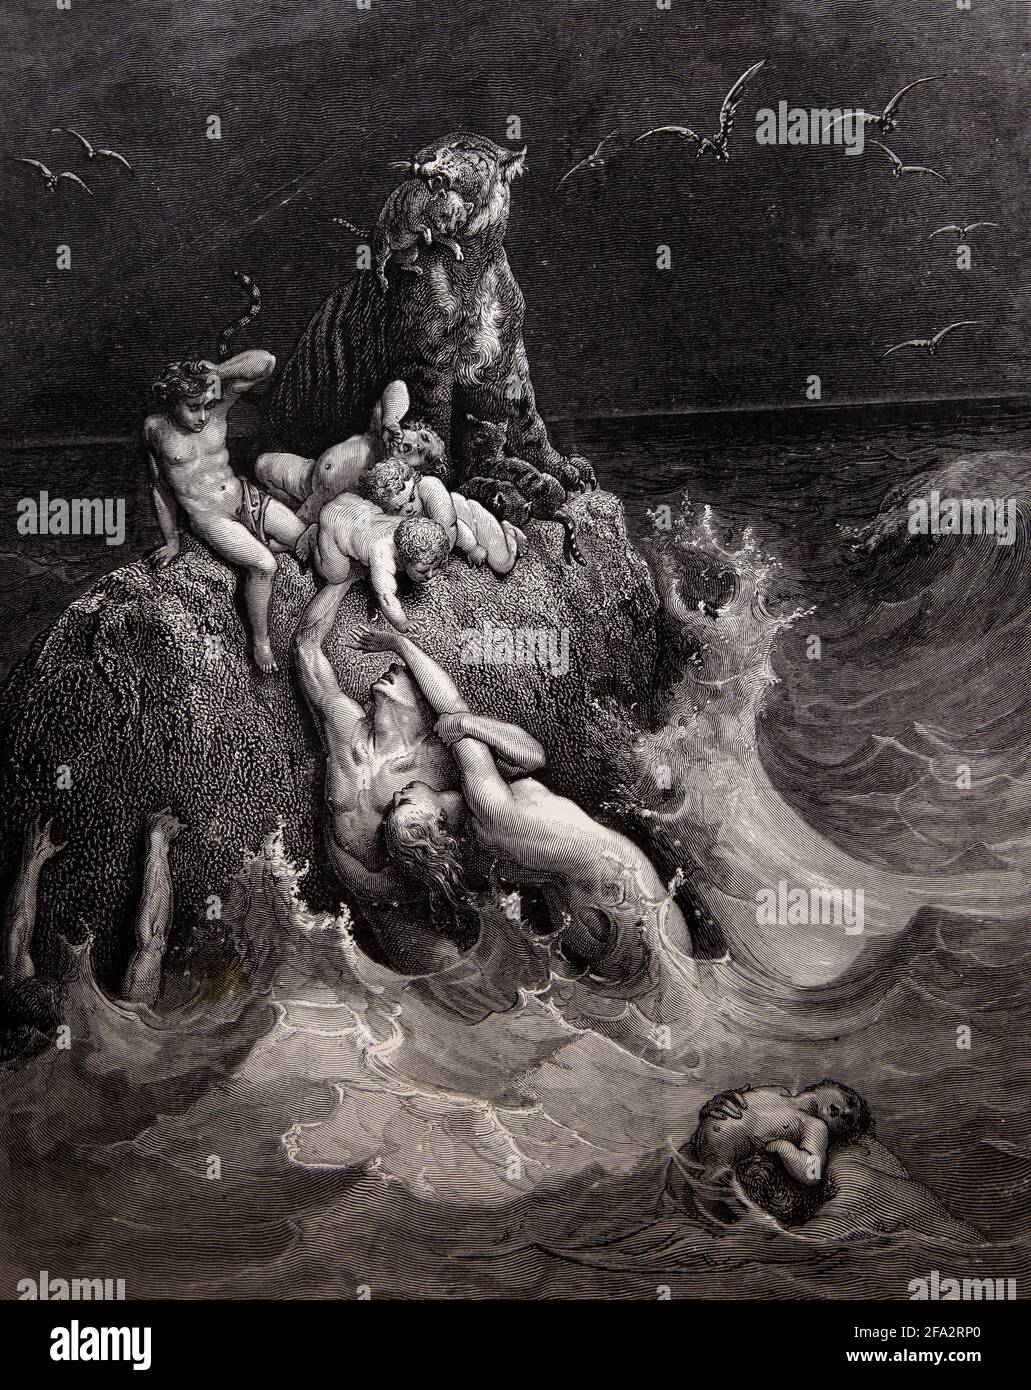 Histoire de la Bible Illustration du Deluge (le Grand déluge) Genèse 8:3-4 par Gustave Dore Banque D'Images